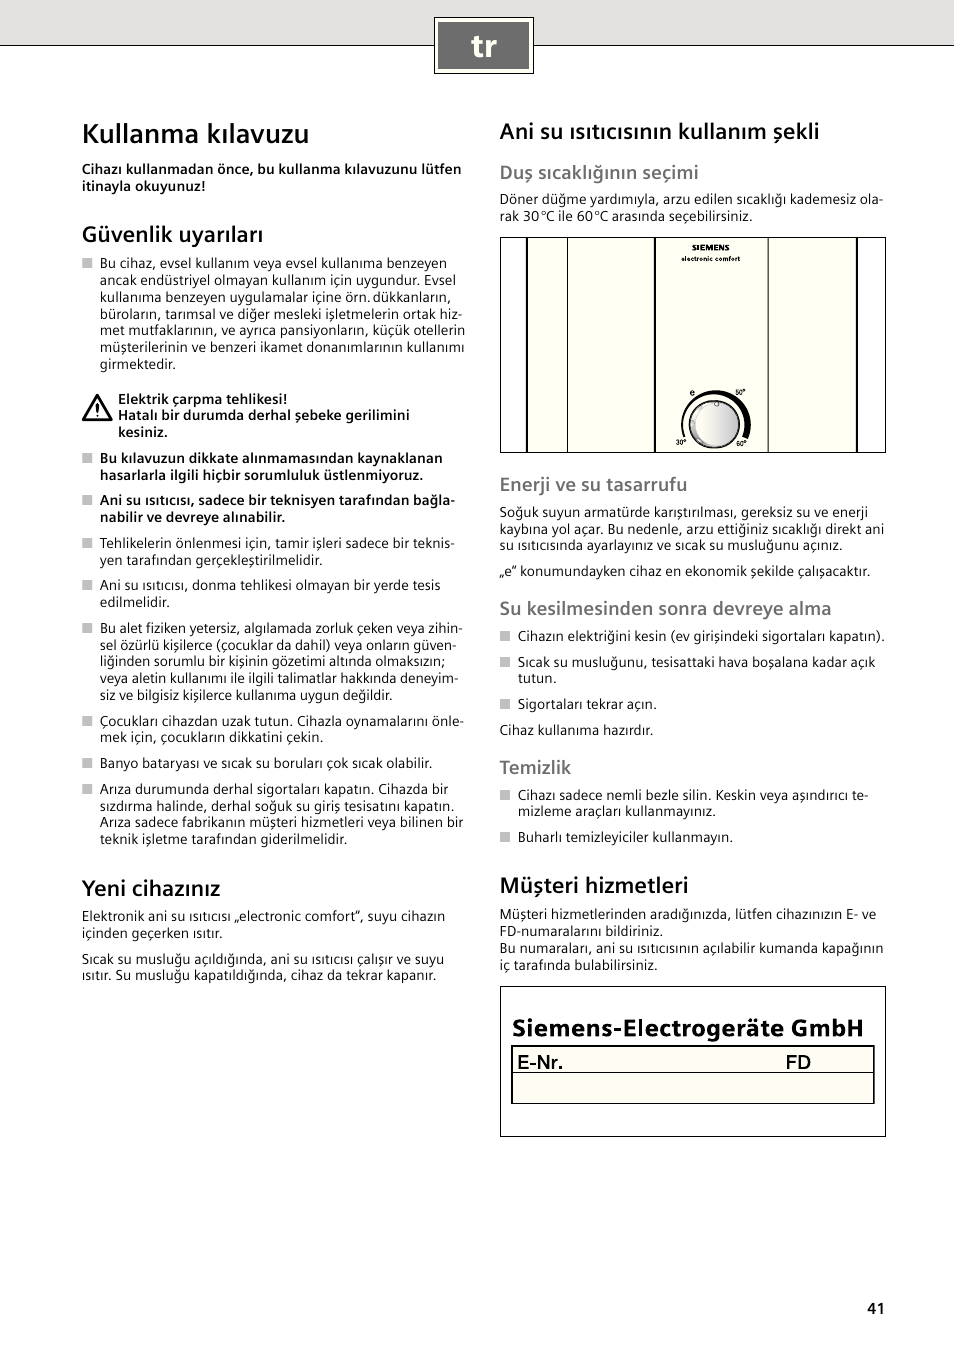 Kullanma kılavuzu, Güvenlik uyarıları, Yeni cihazınız | Siemens DE1821415  User Manual | Page 49 / 52